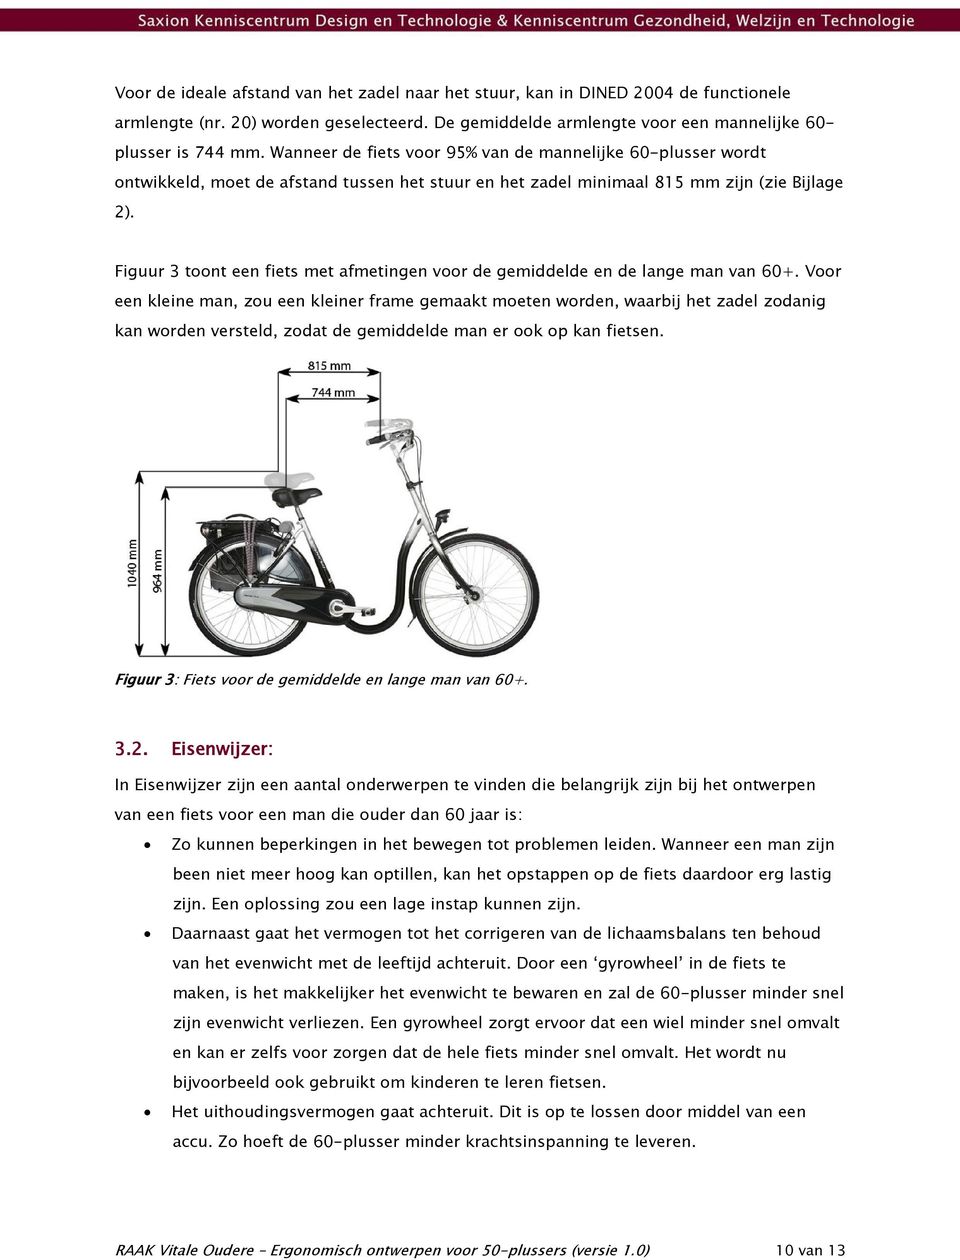 Figuur 3 toont een fiets met afmetingen voor de gemiddelde en de lange man van 60+.